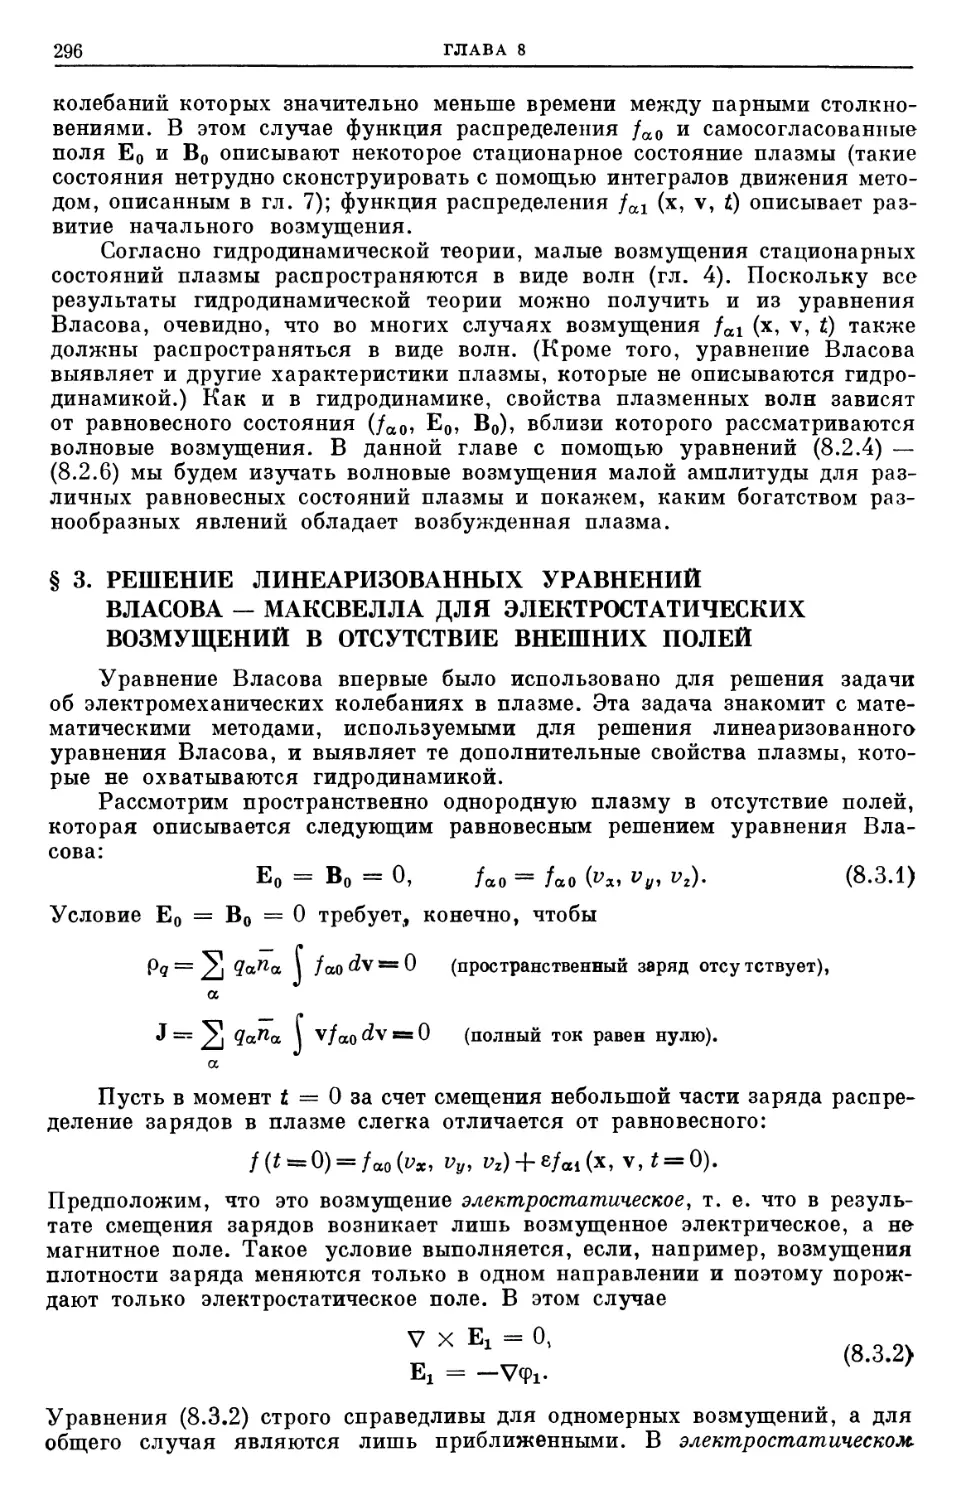 § 3. Решение линеаризованных уравнений Власова — Максвелла для электростатических возмущений в отсутствие внешних полей